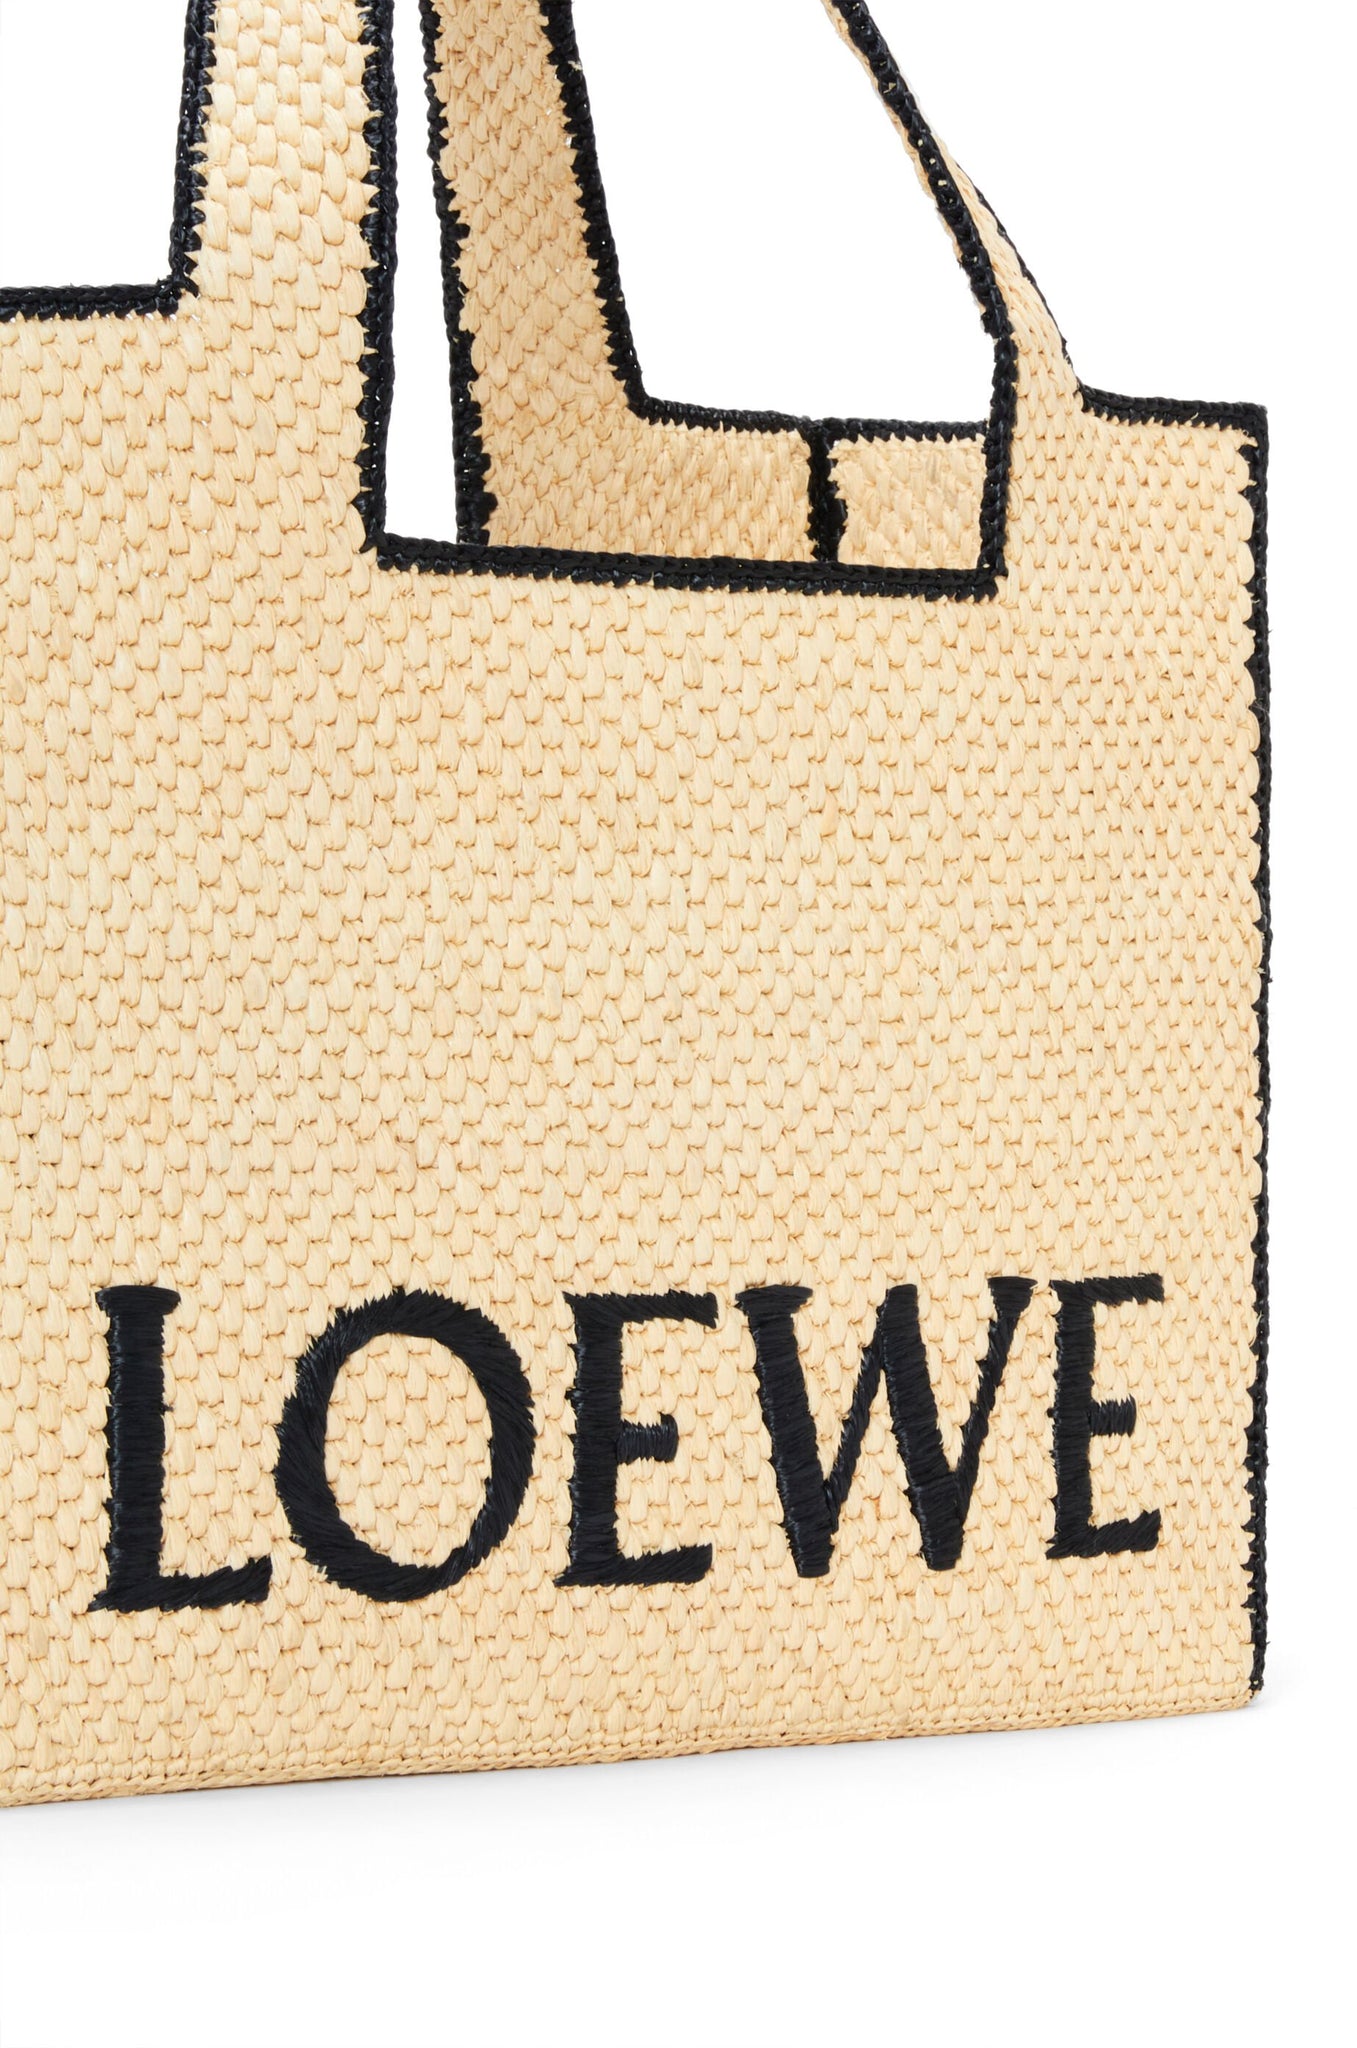 Loewe Font Tote Large Bag